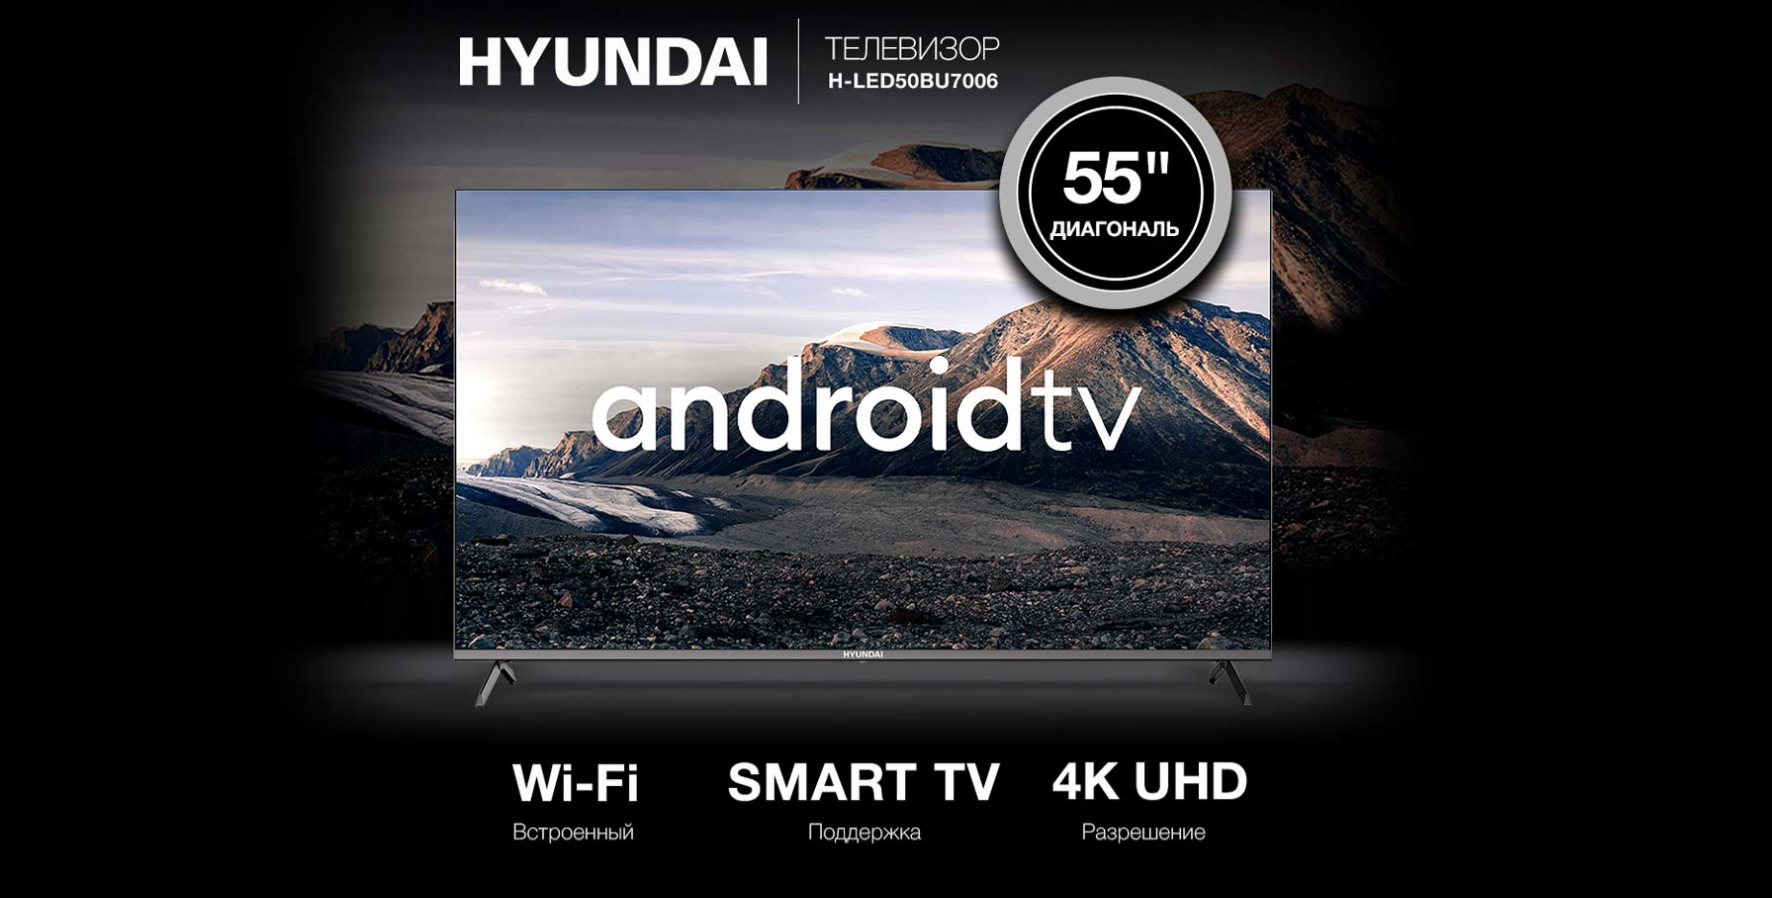 H-led50bu7006. Hyundai Android TV H-led50bu7006, 50". Hyundai 43 h-led43bu7006. Хунда1 75bu7006.